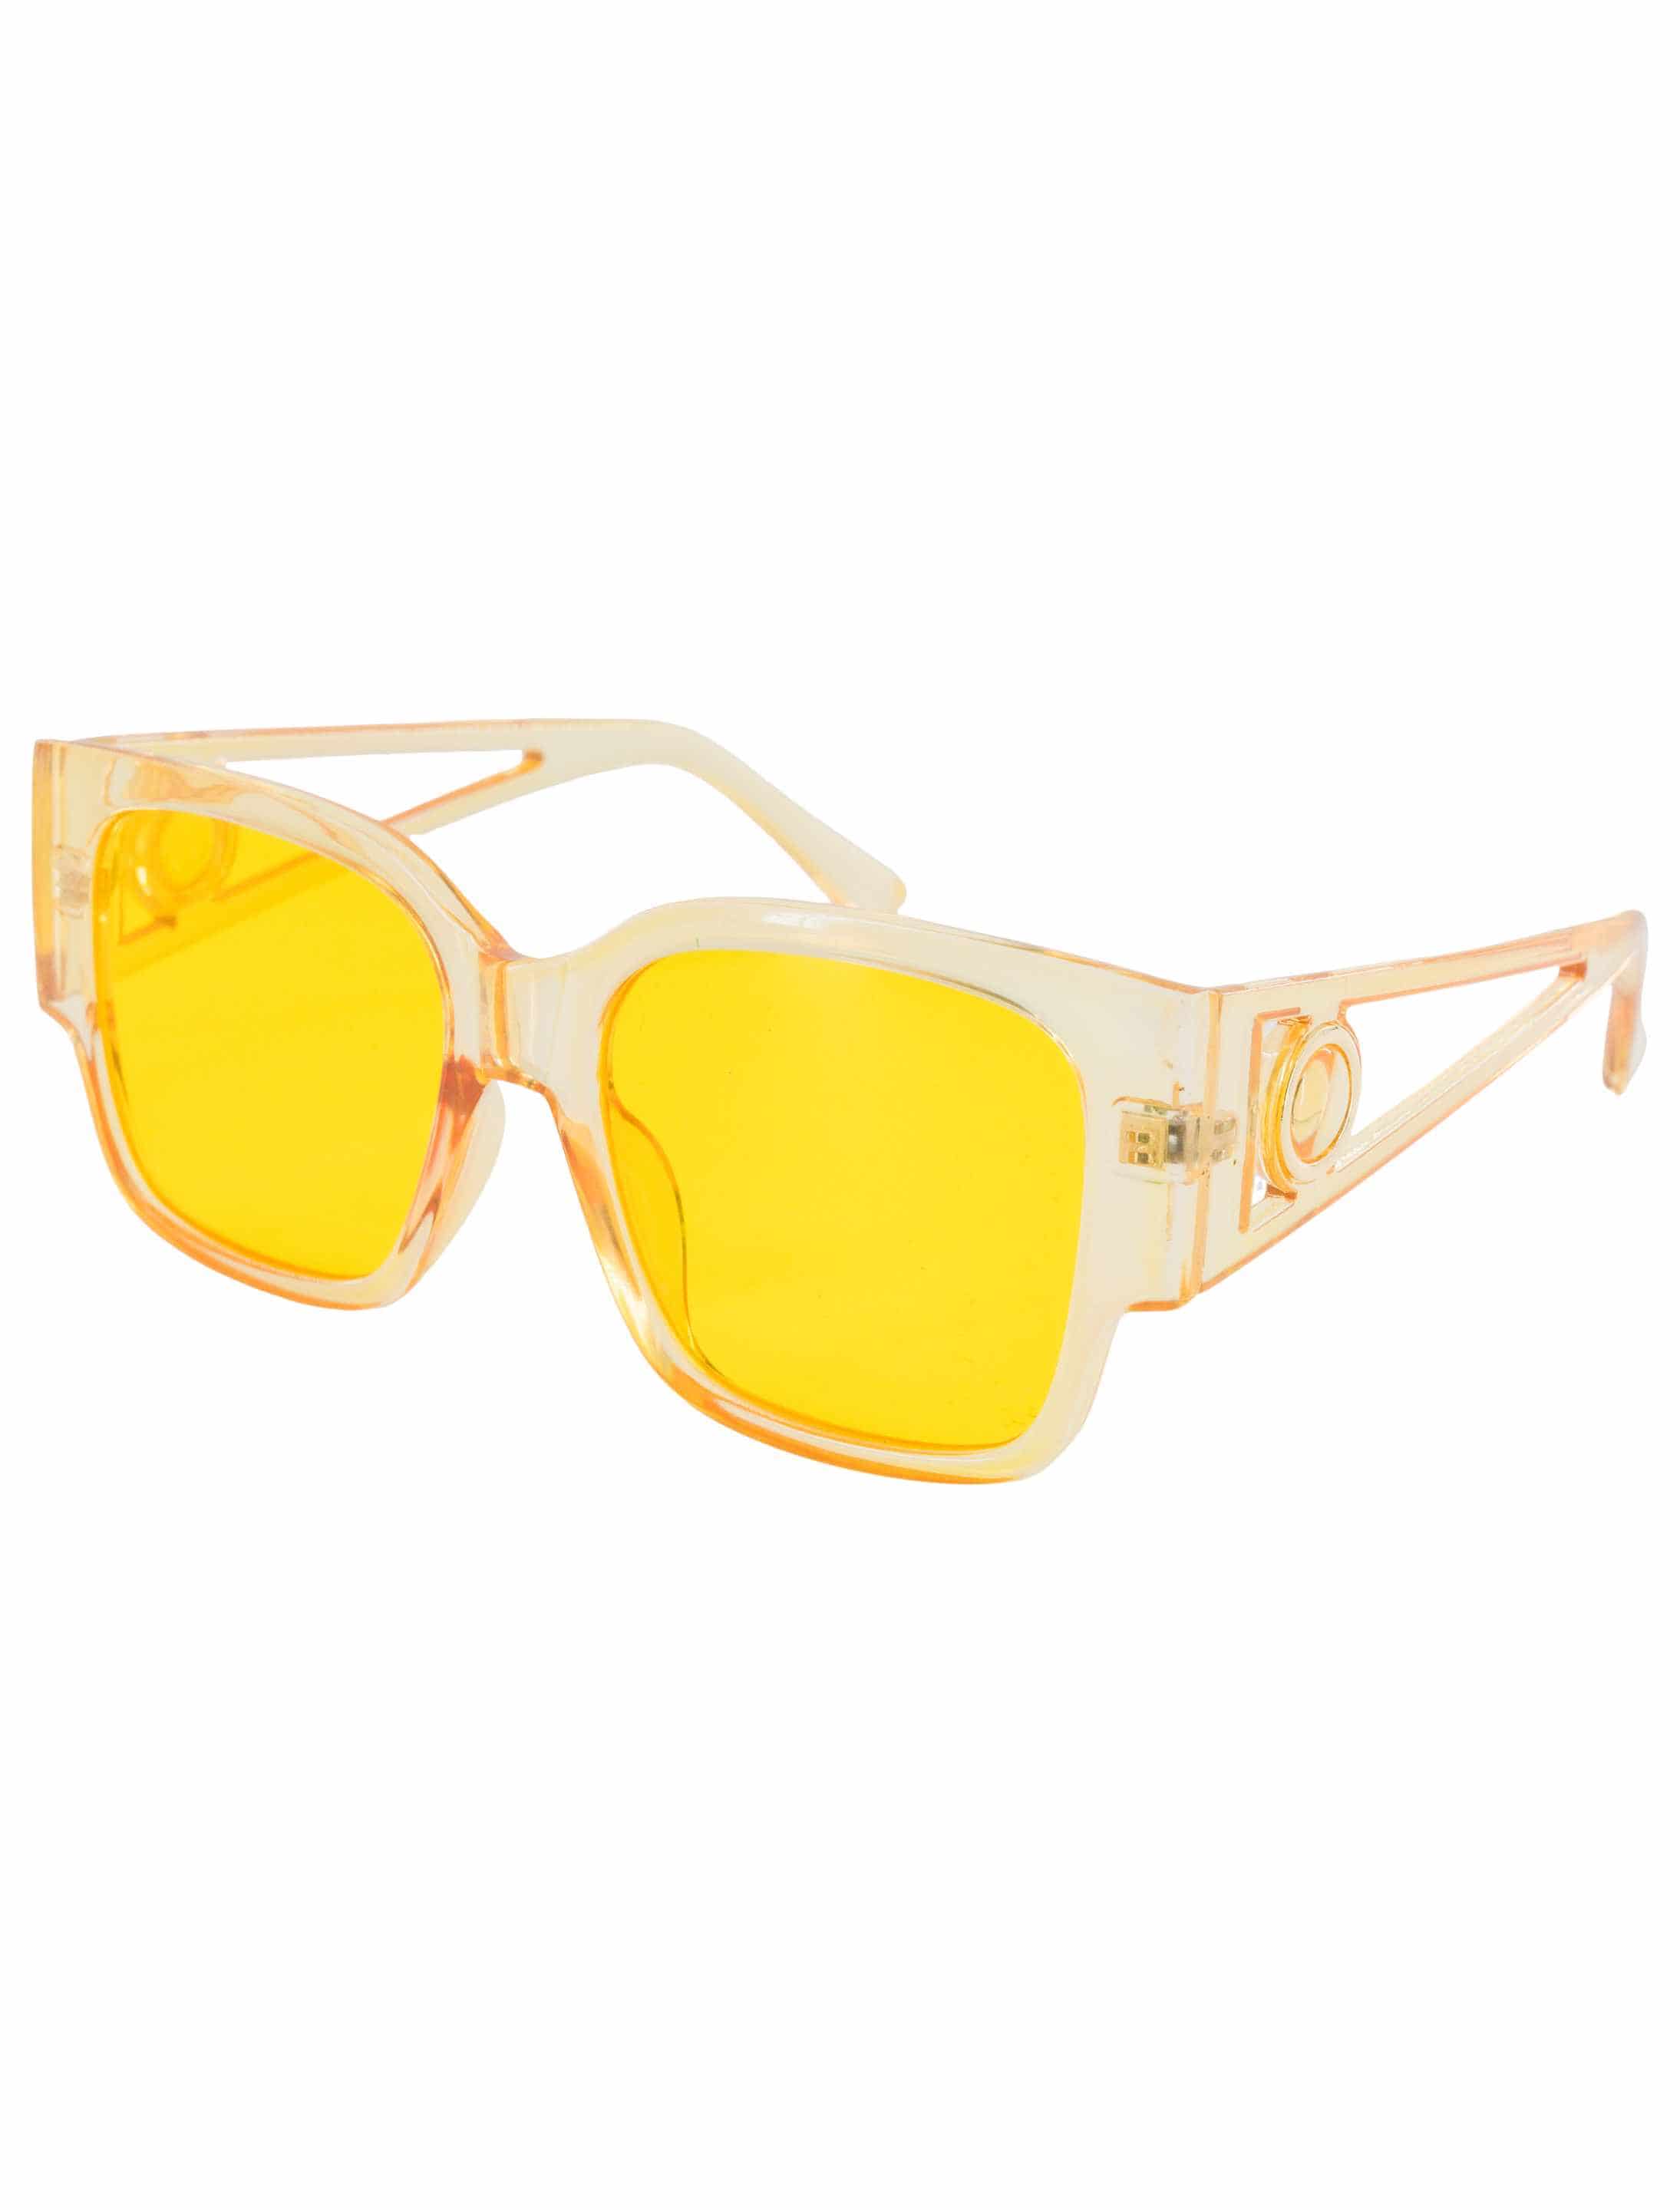 Brille große Gläser transparent  gelb